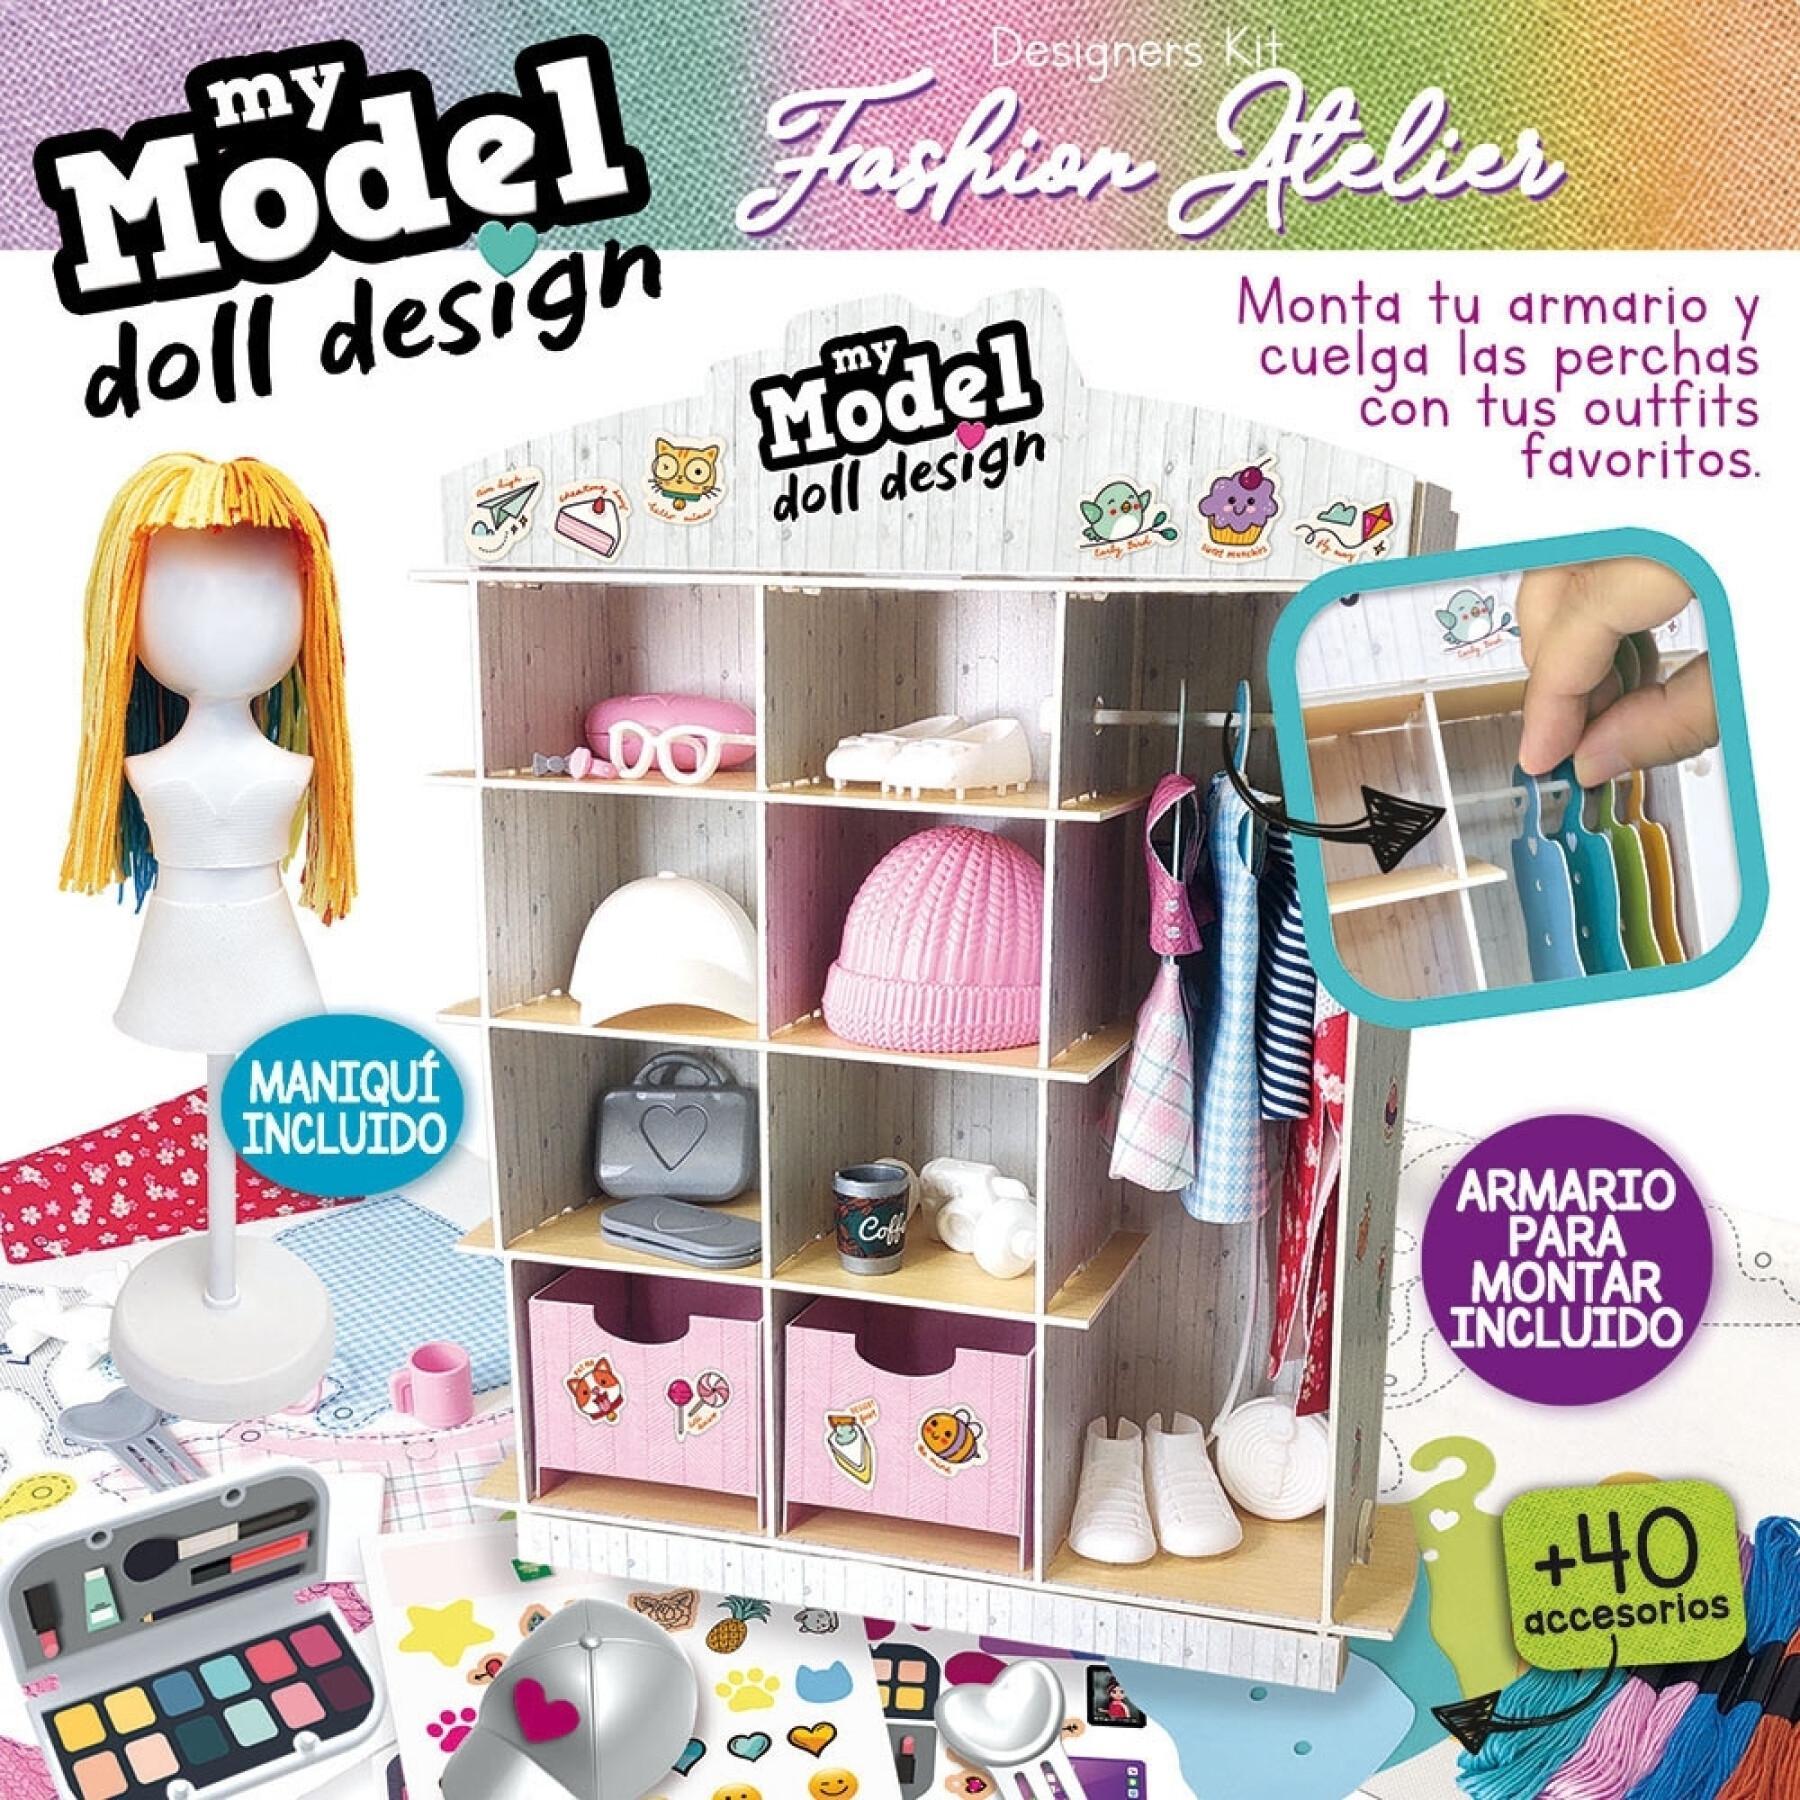 Kit accessoires pour poupée Educa My Model Doll Design